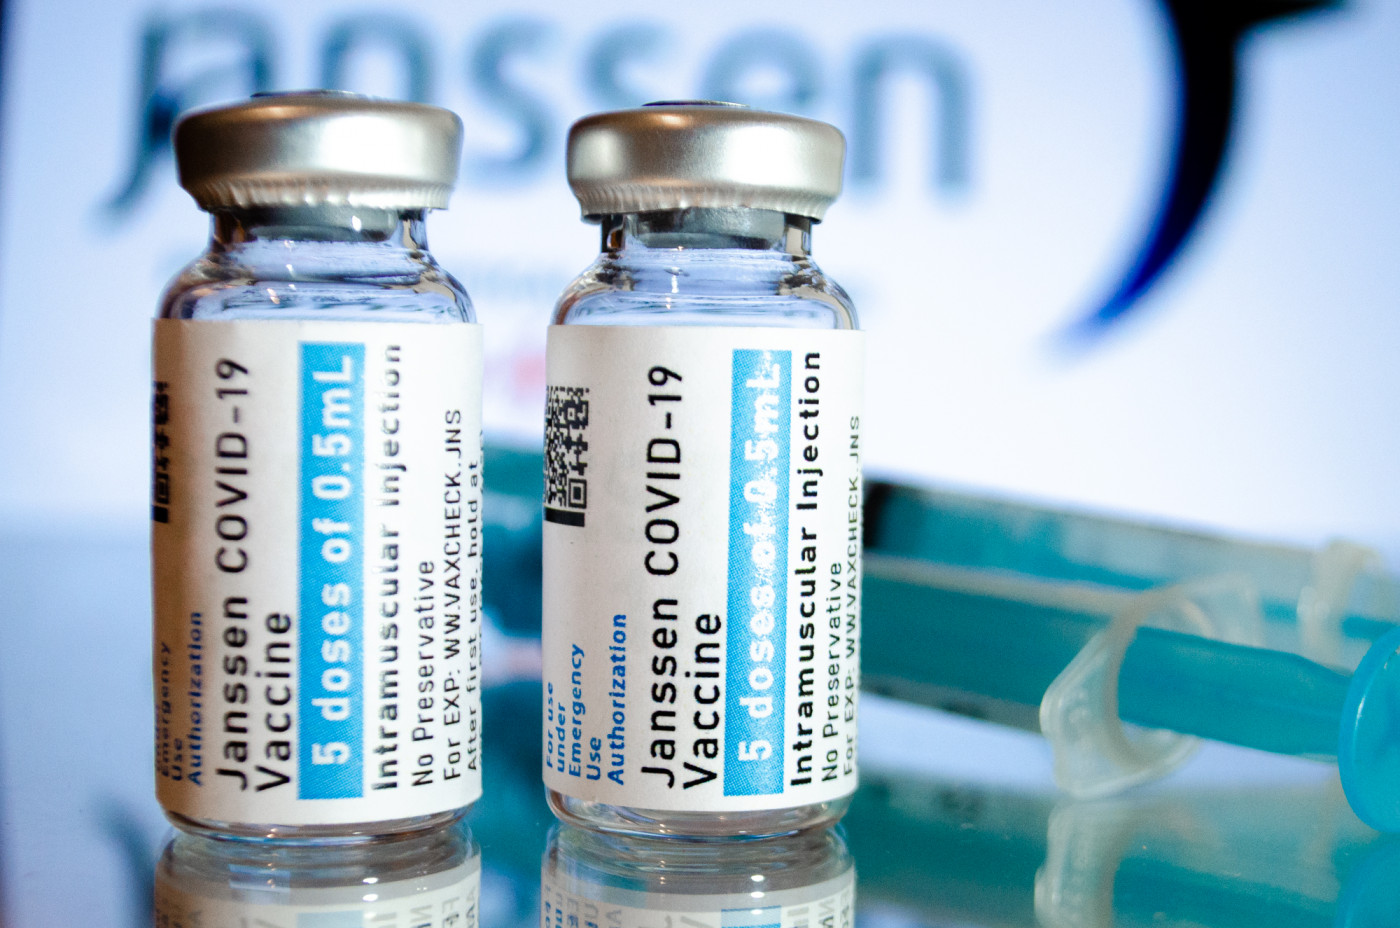 Weaknesses of Janssen's Covid-19 Vaccine